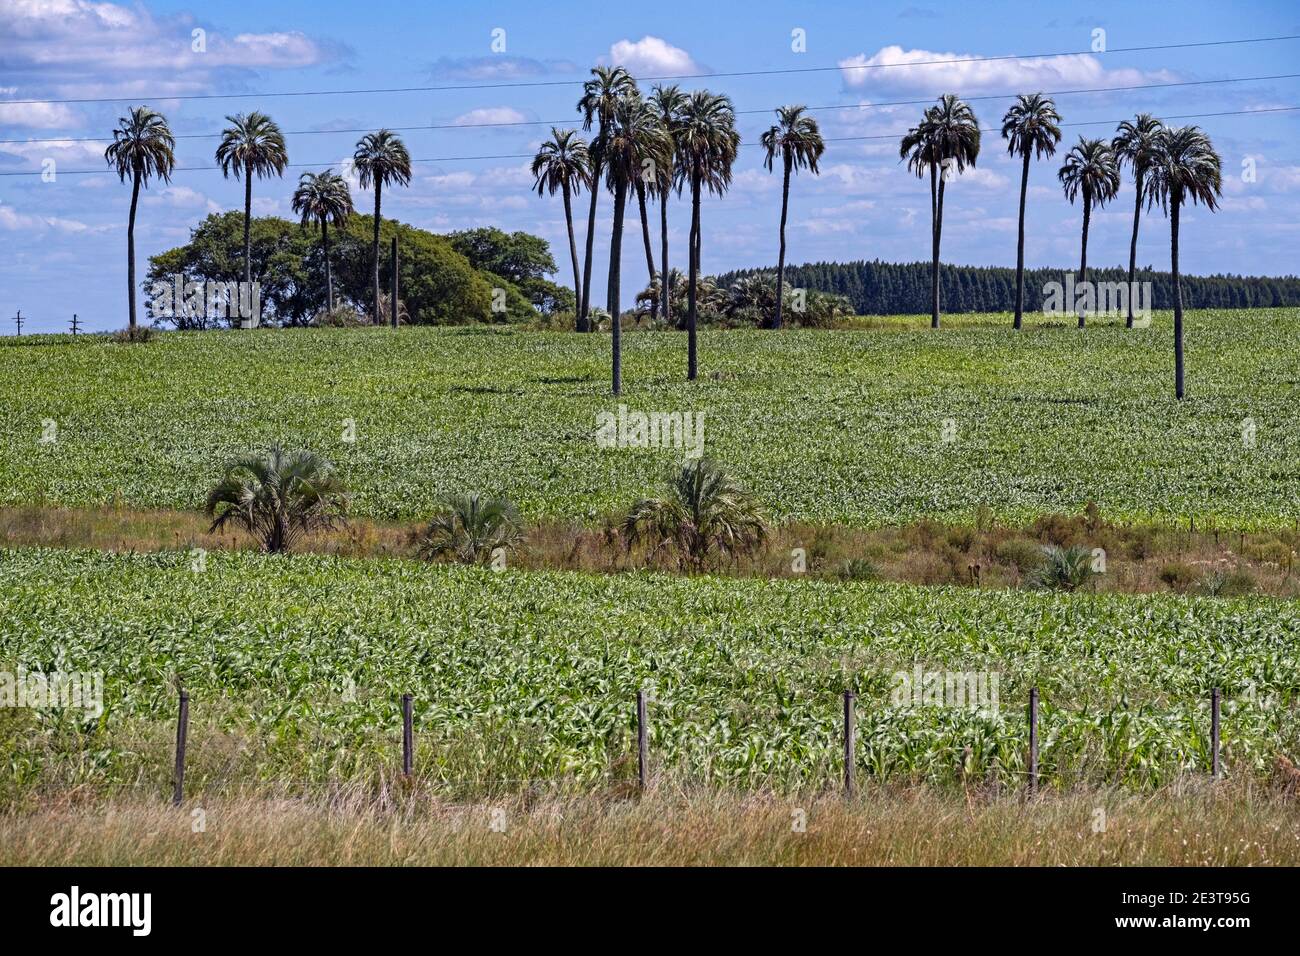 Raccolto di soia / campo di soia (Glycine max) e palme vicino Paysandu, Uruguay occidentale Foto Stock